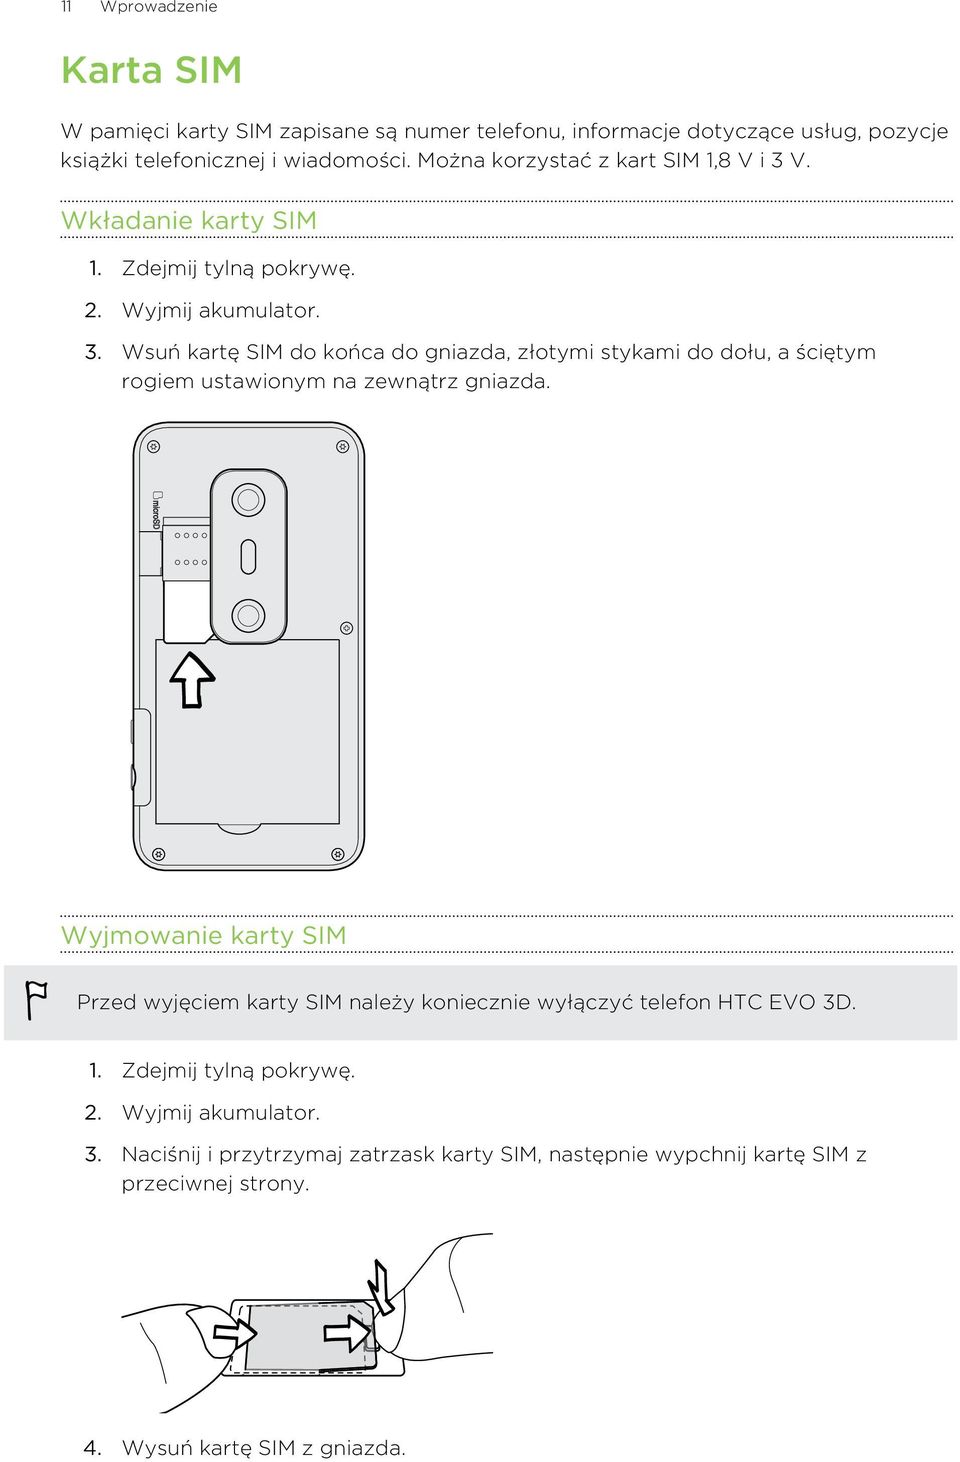 Wyjmowanie karty SIM Przed wyjęciem karty SIM należy koniecznie wyłączyć telefon HTC EVO 3D